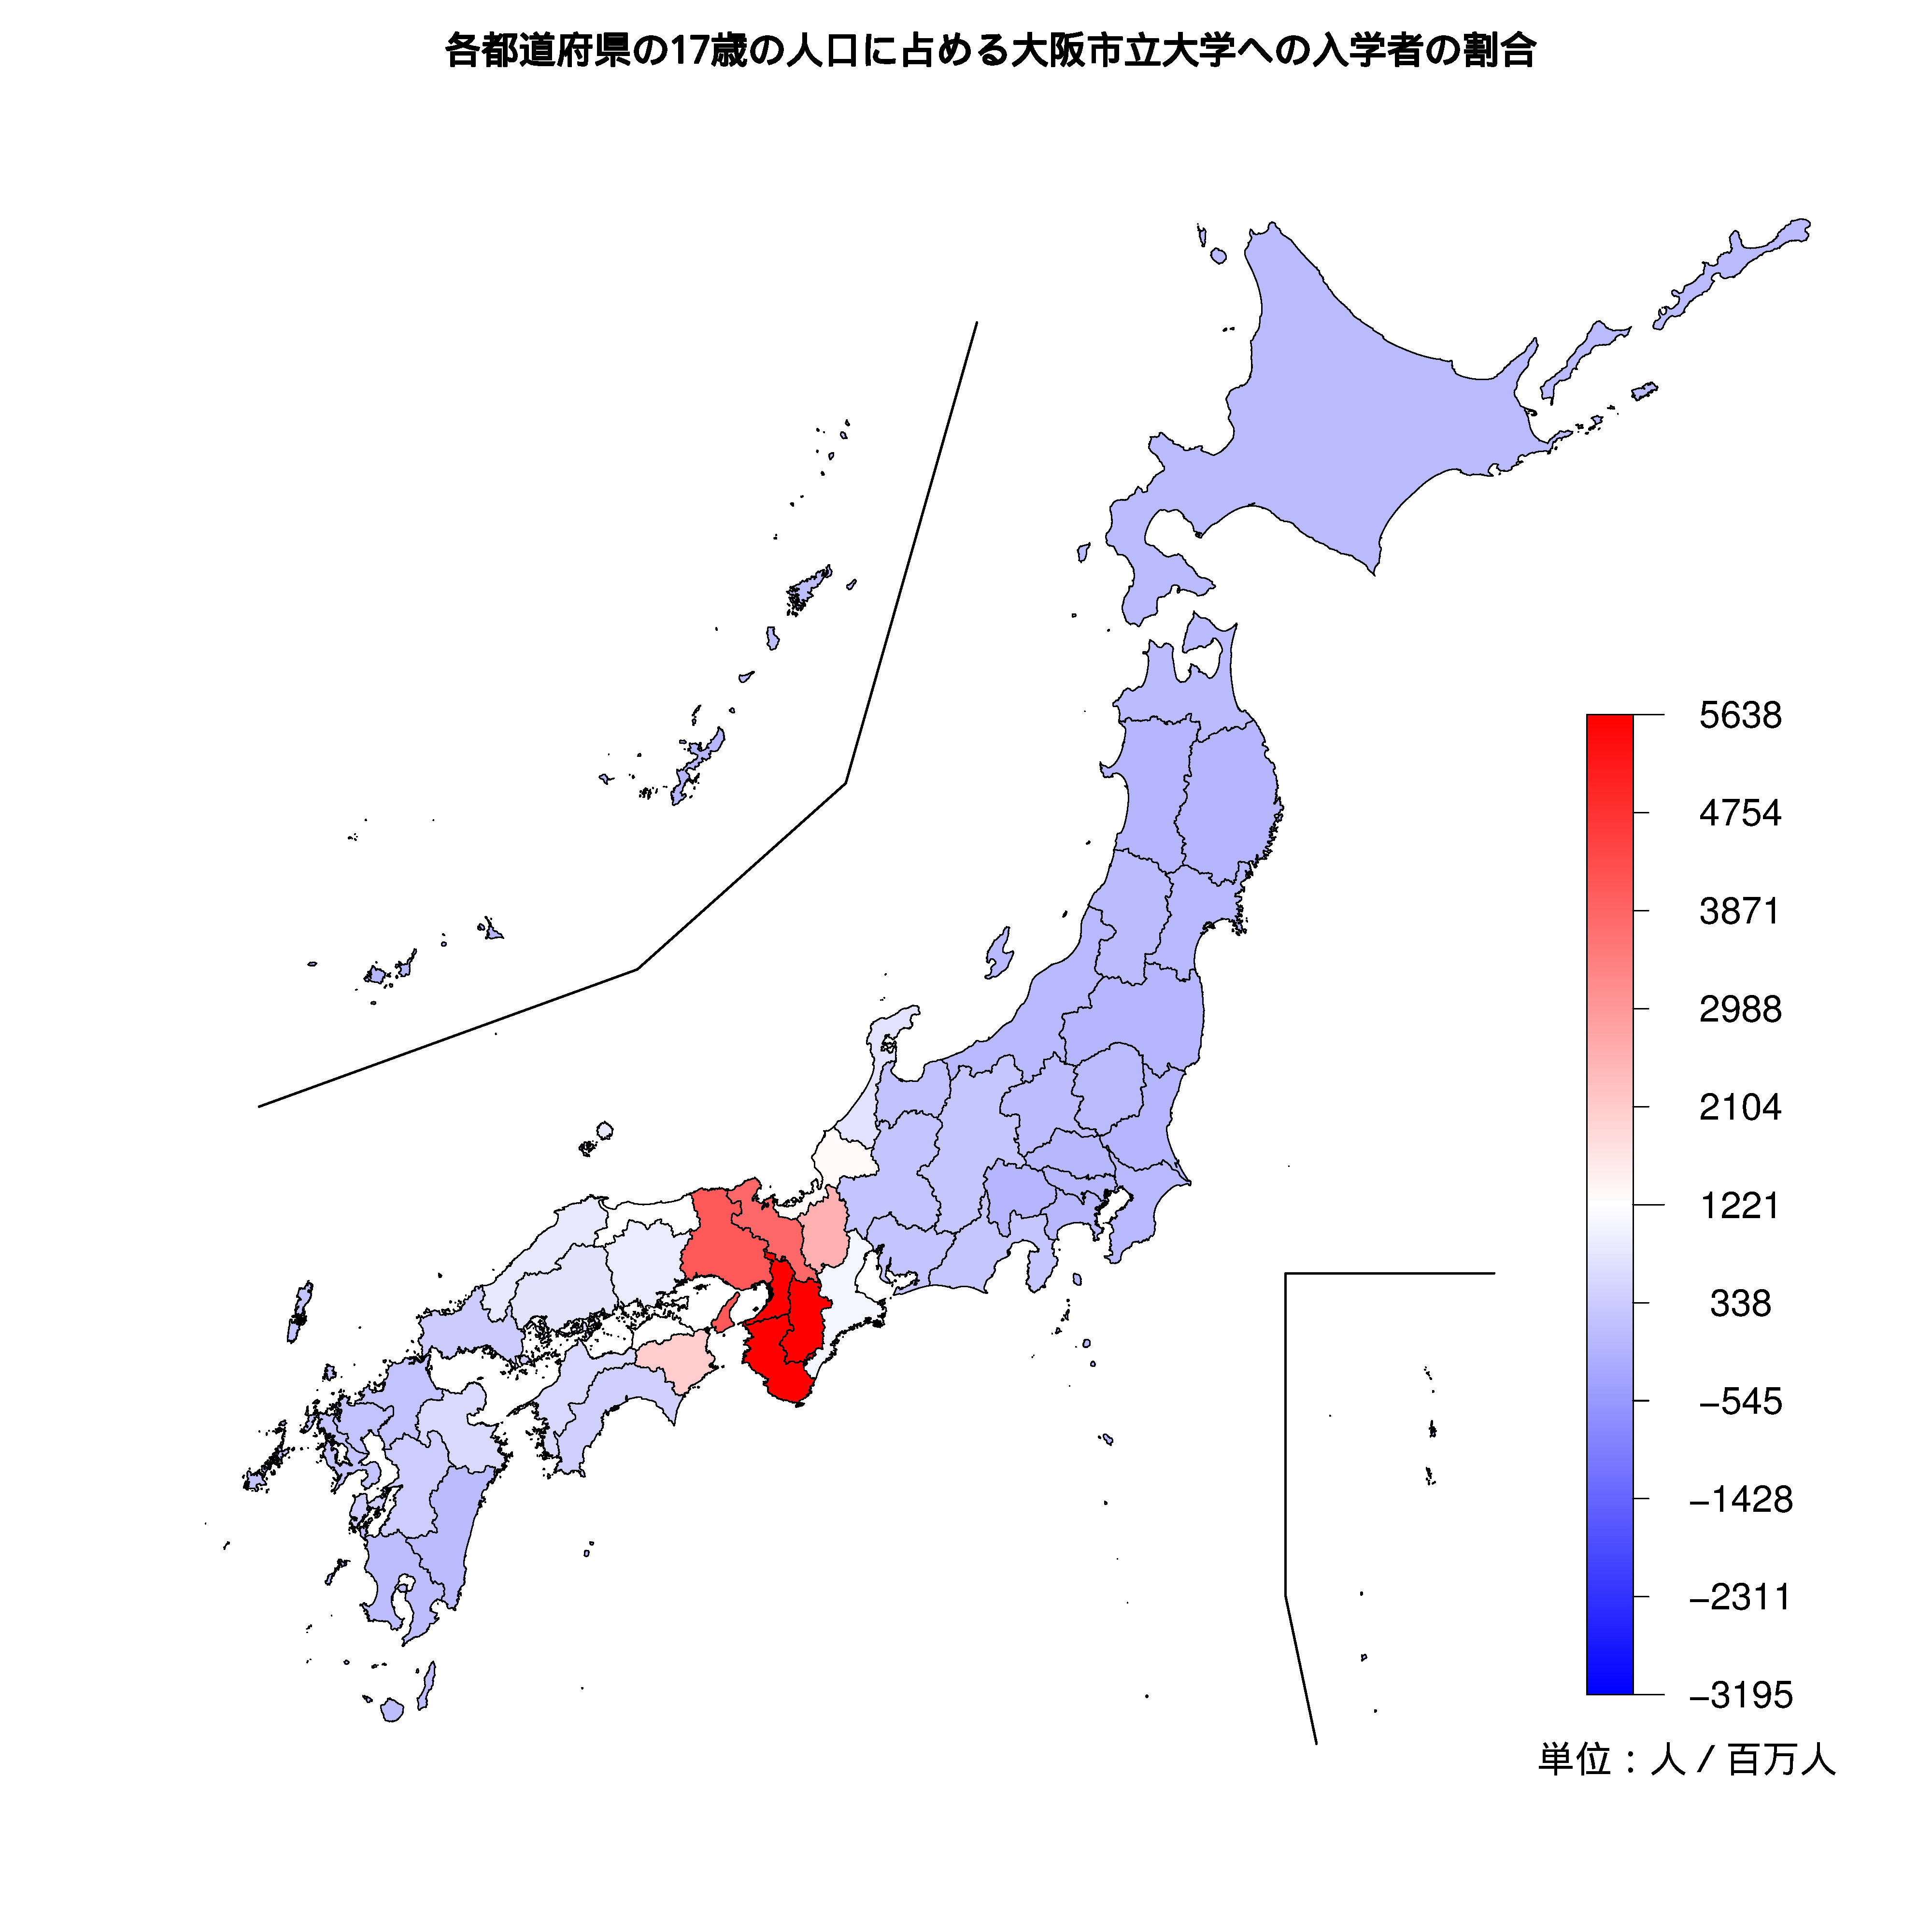 大阪市立大学への入学者が多い都道府県の色分け地図